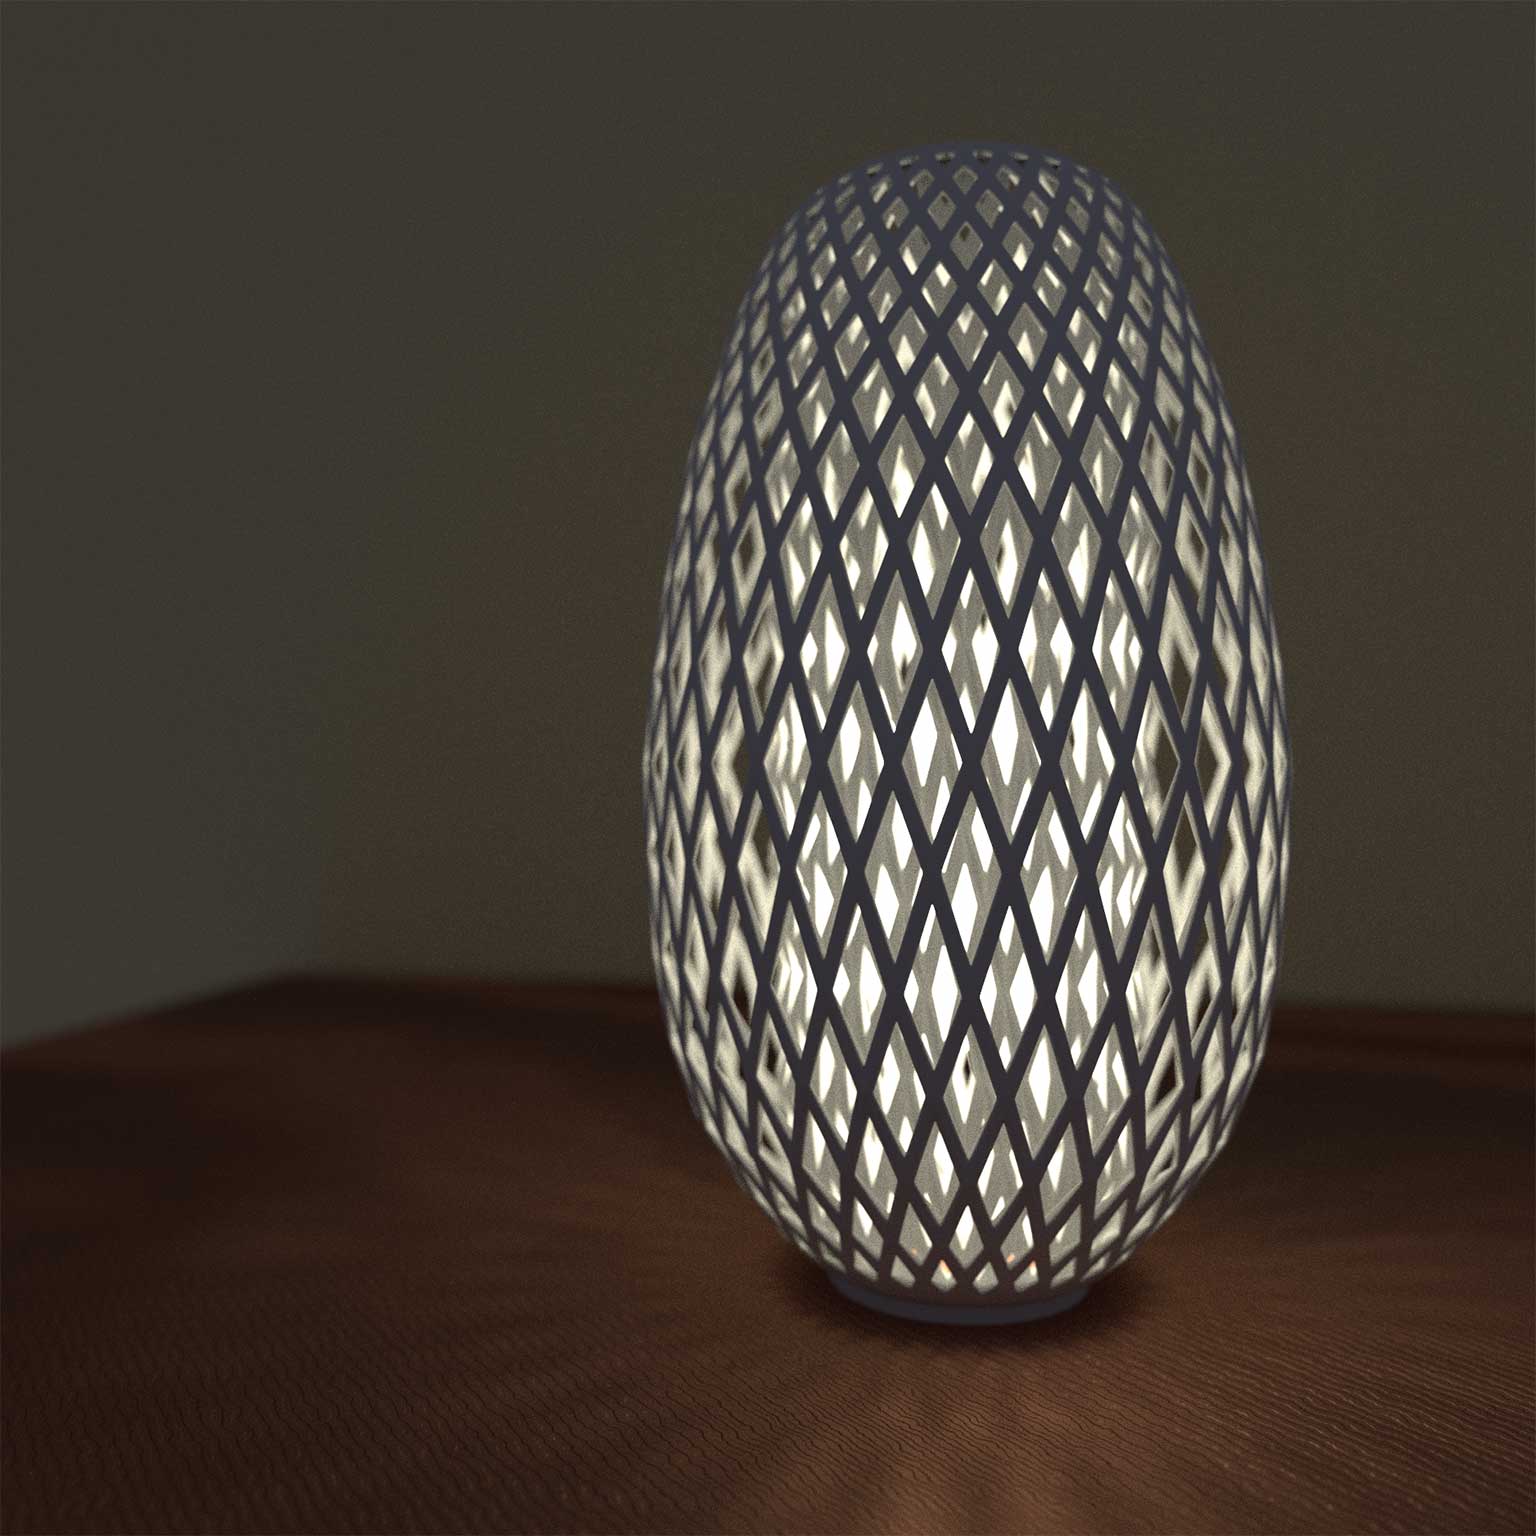 Lamp design, Blender.